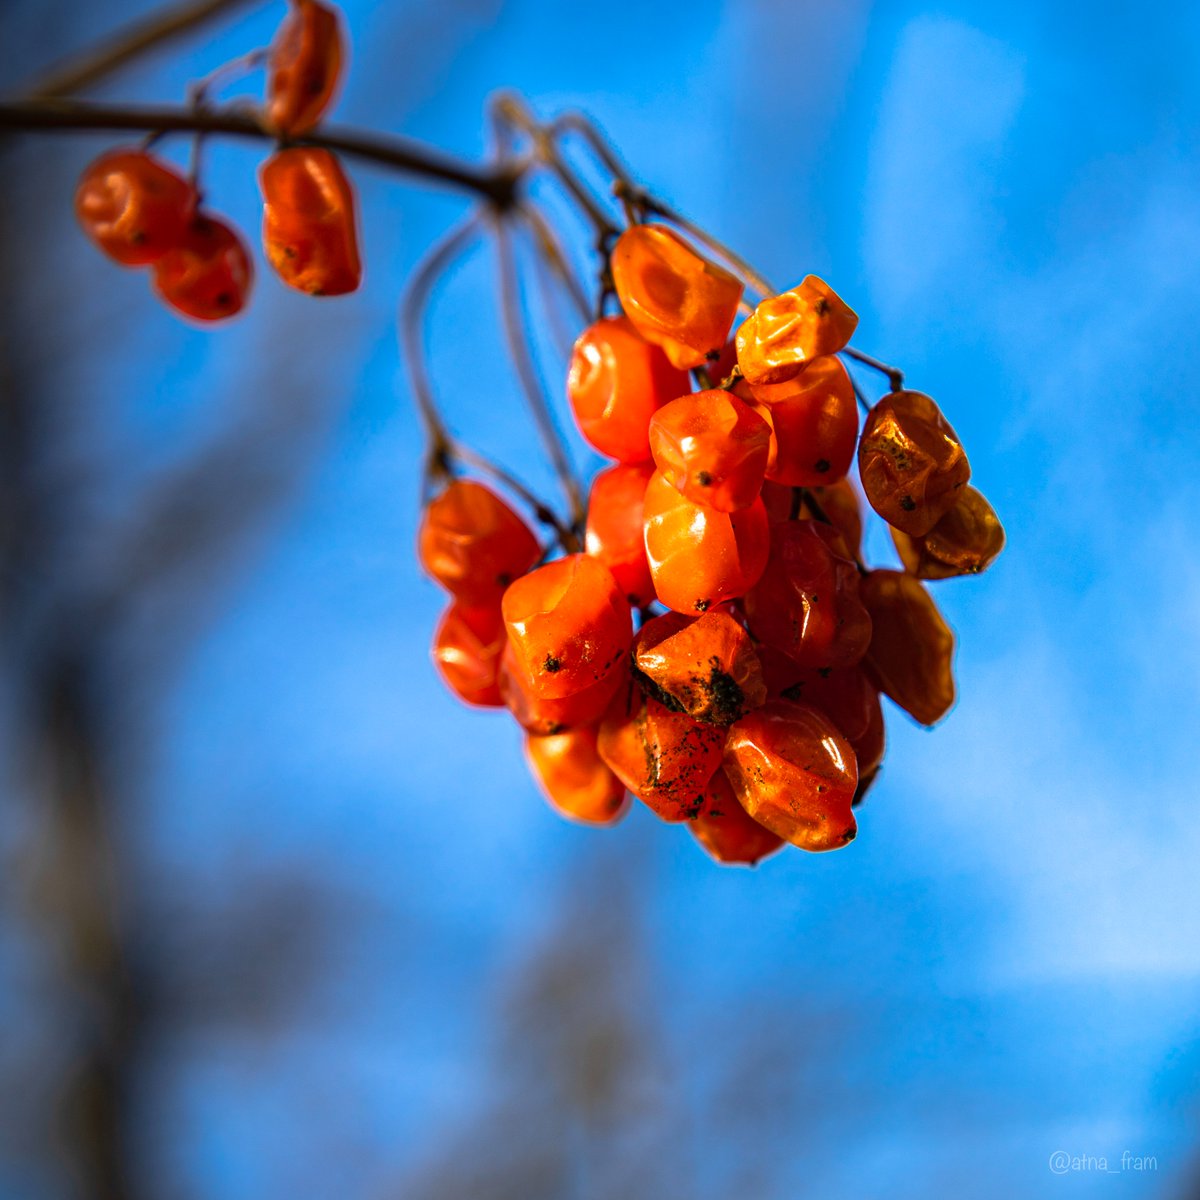 still autumn stocks😁
#NaturePhotography #springphotography #berries #autumnstocks #photo #photography #Photo_Folio #PHOTOS #walkoutside